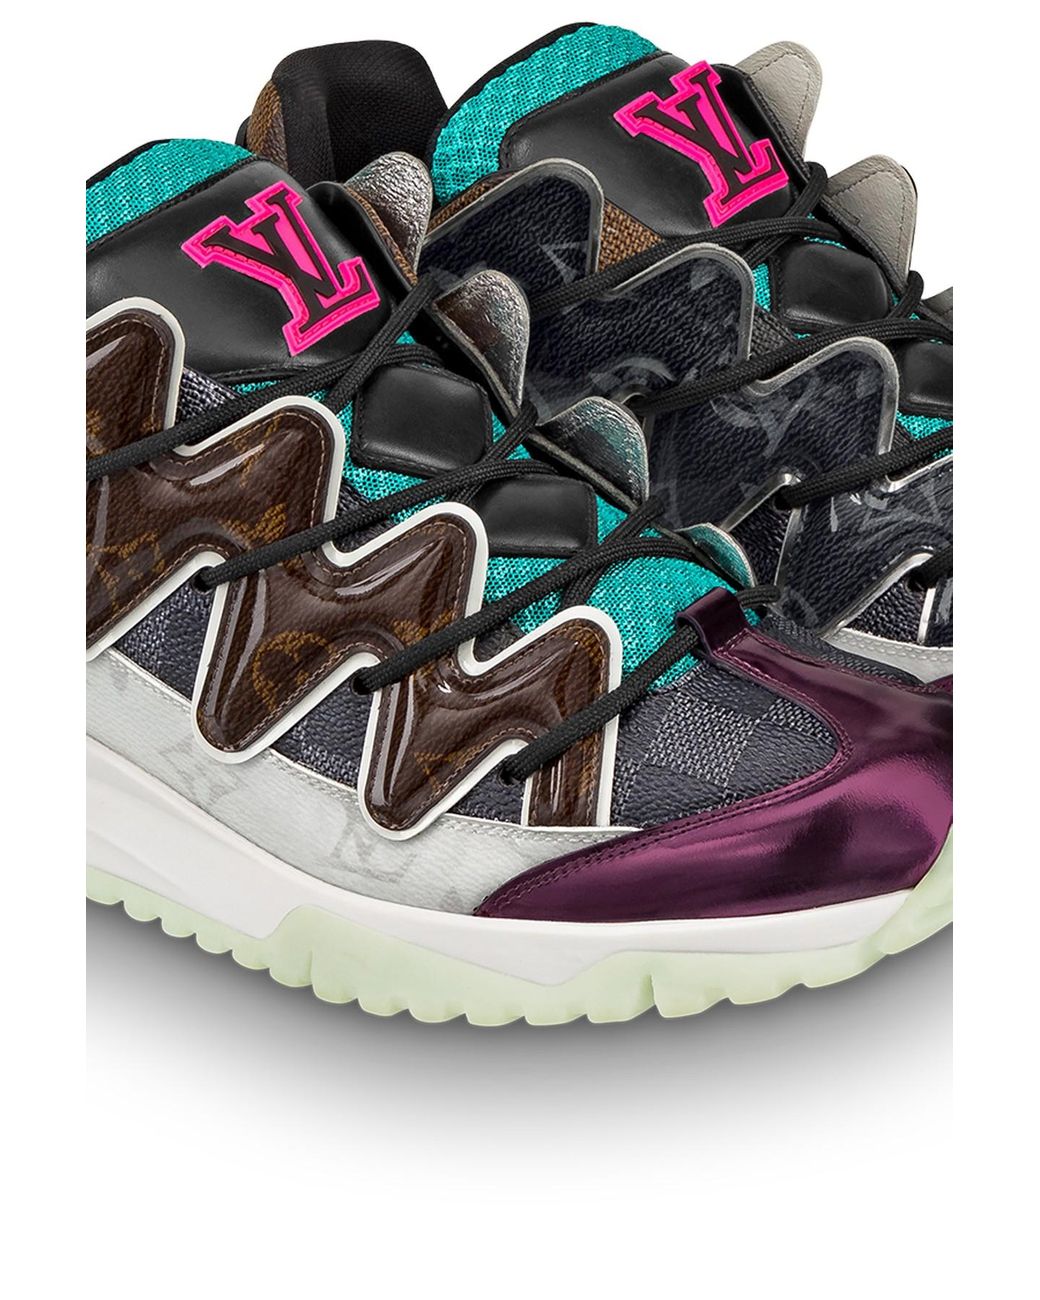 Louis Vuitton Zigzag Multicolor Leather Sneakers Size 11 Men'